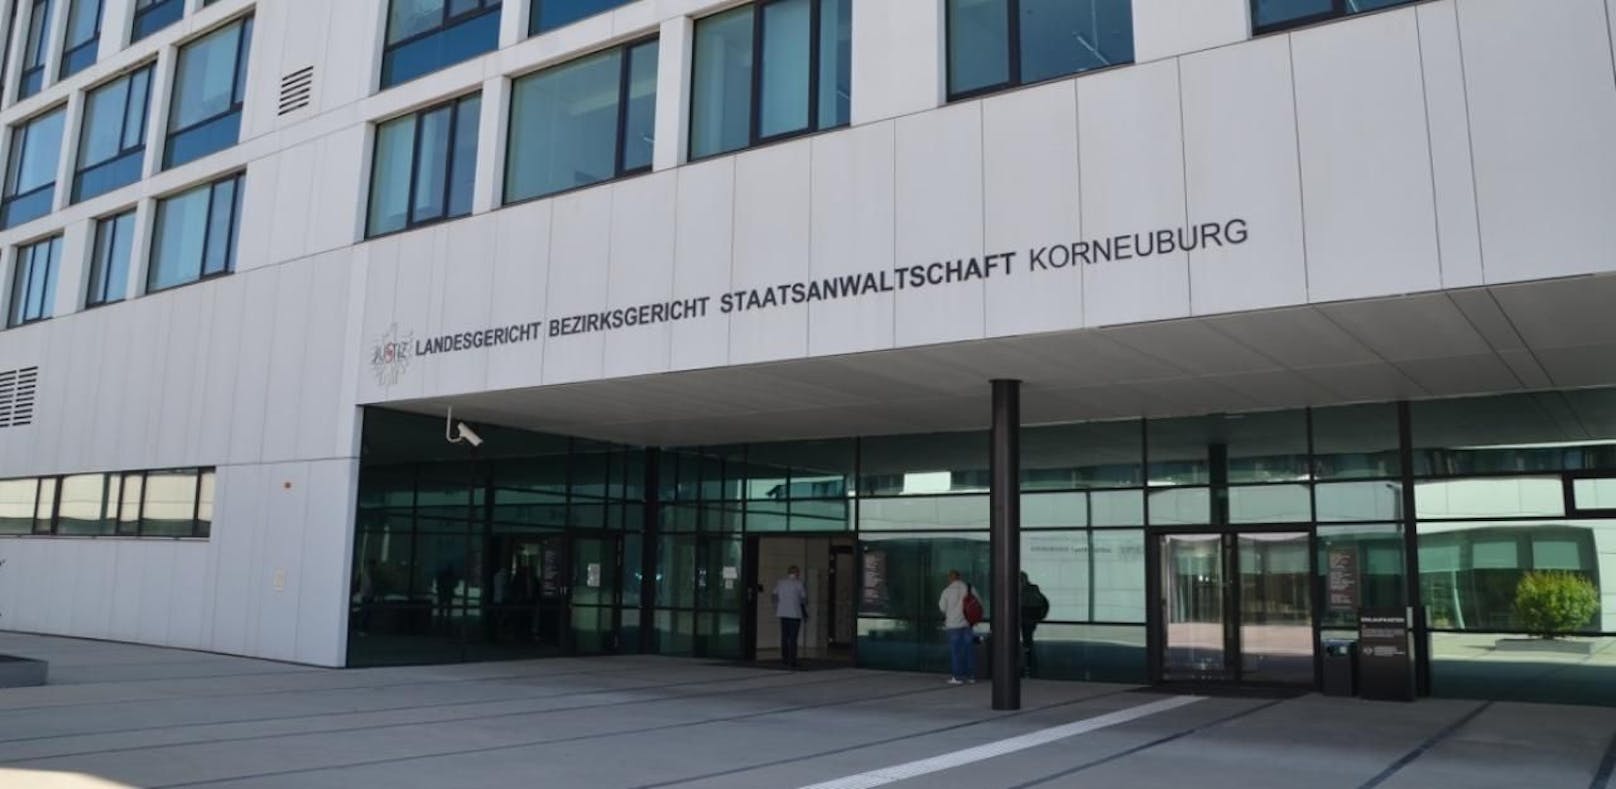 Der Ungar ist jetzt im Korneuburger Justizzentrum untergebracht.